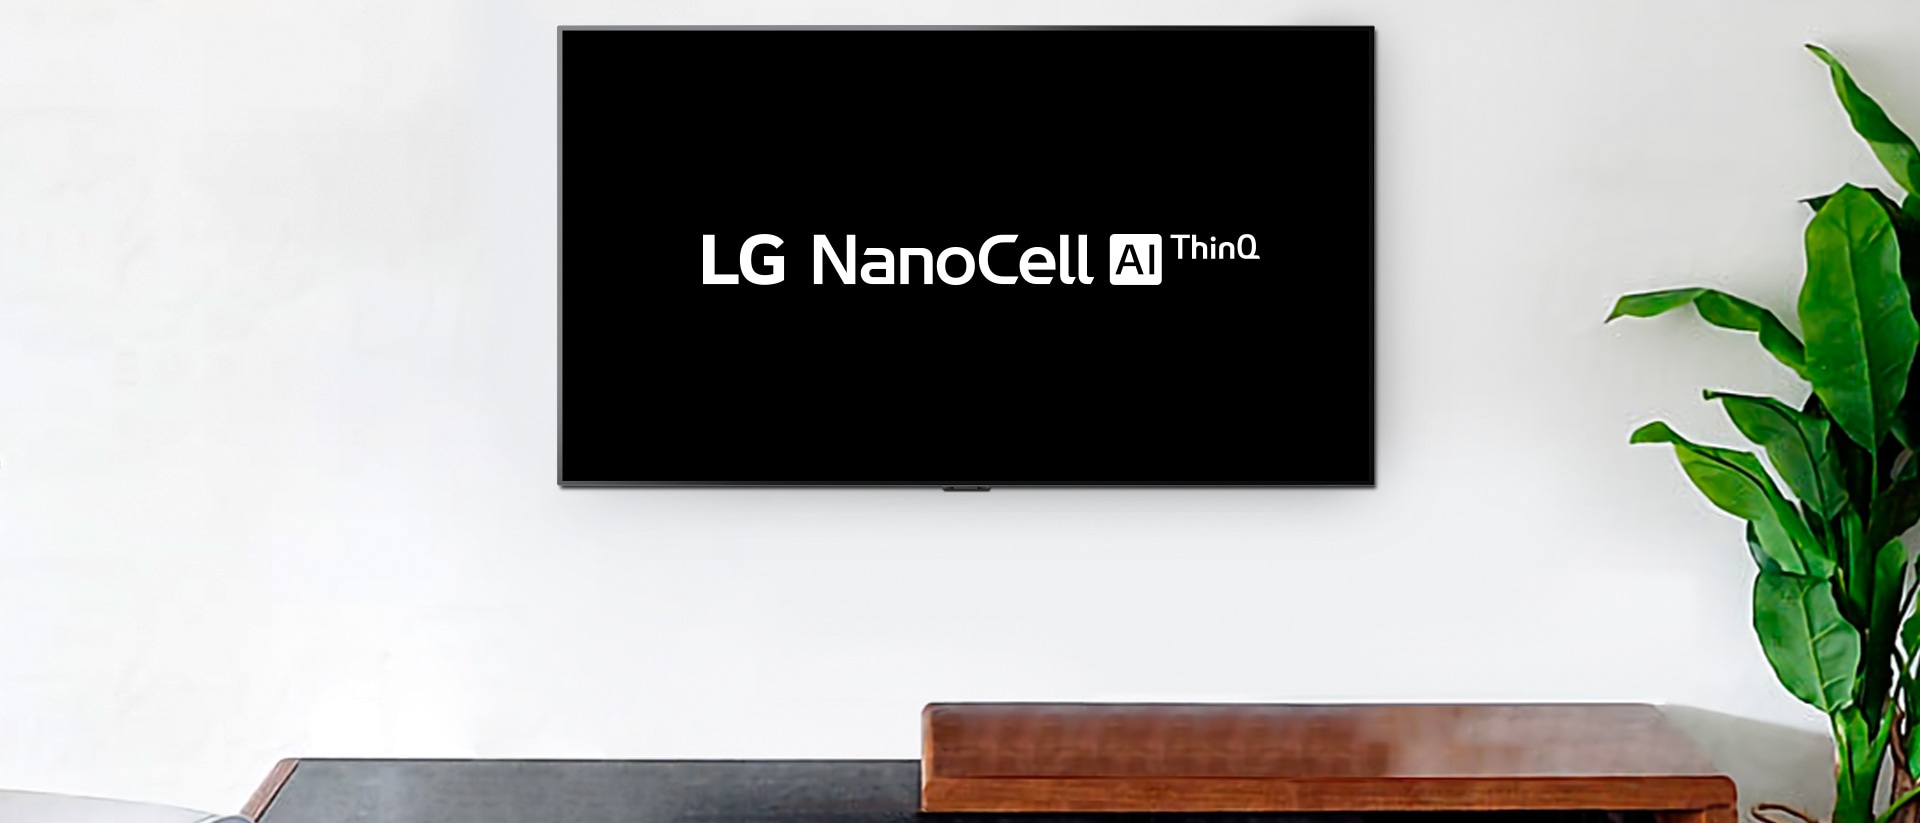 Un téléviseur fixé au mur affichant le logo LG OLED AI ThinQ sur un fond noir